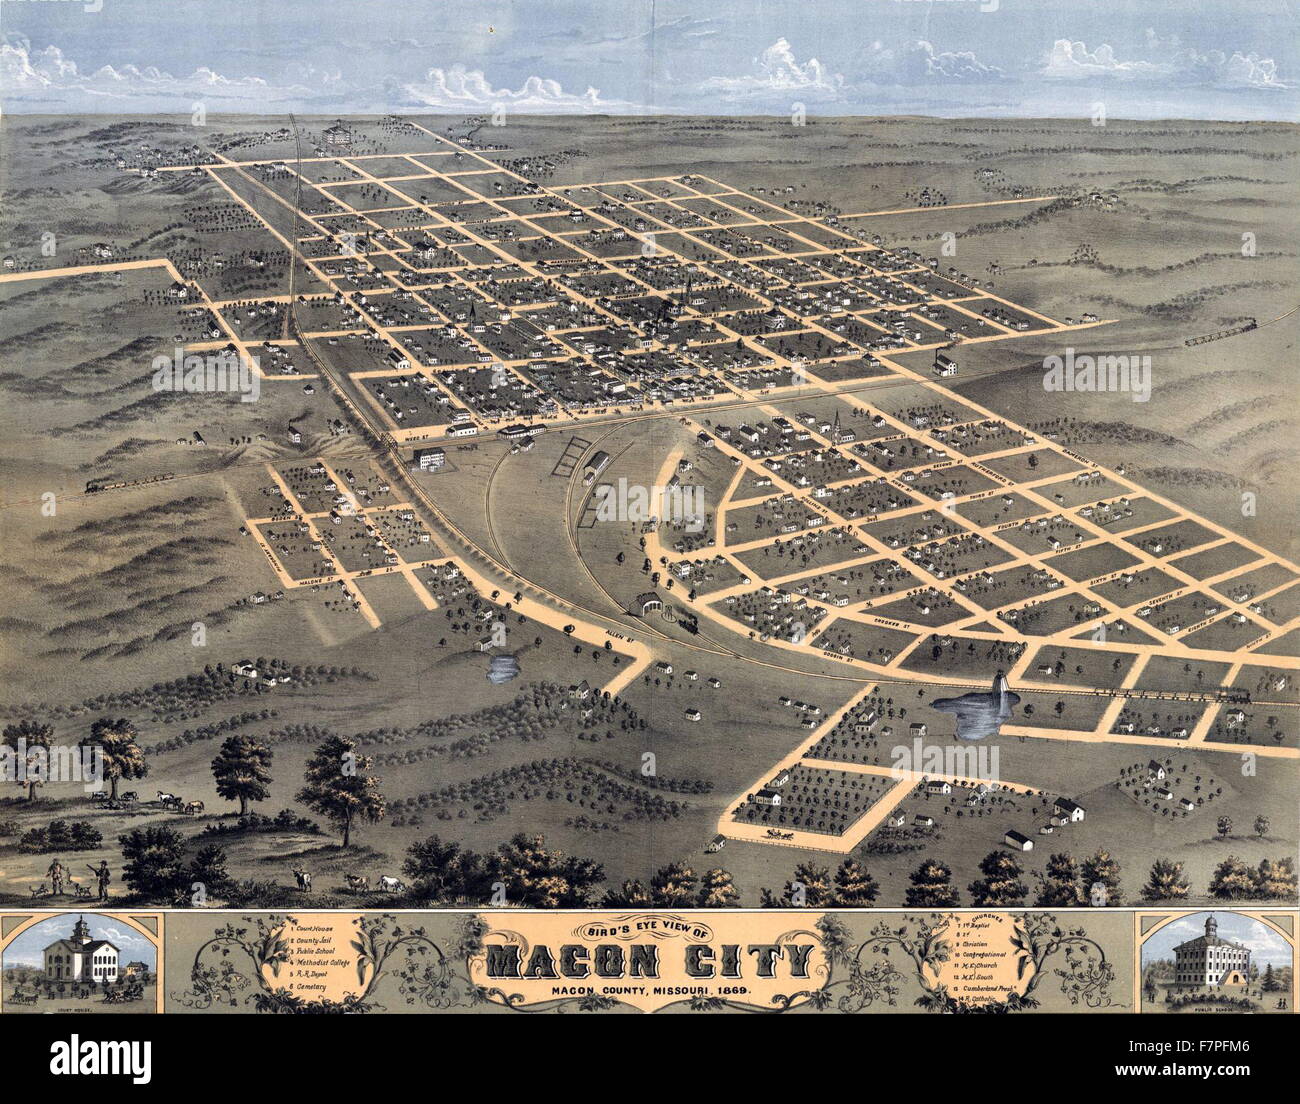 Impression couleur de la ville de Macon, Macon County, Missouri. Datée 1869 Banque D'Images